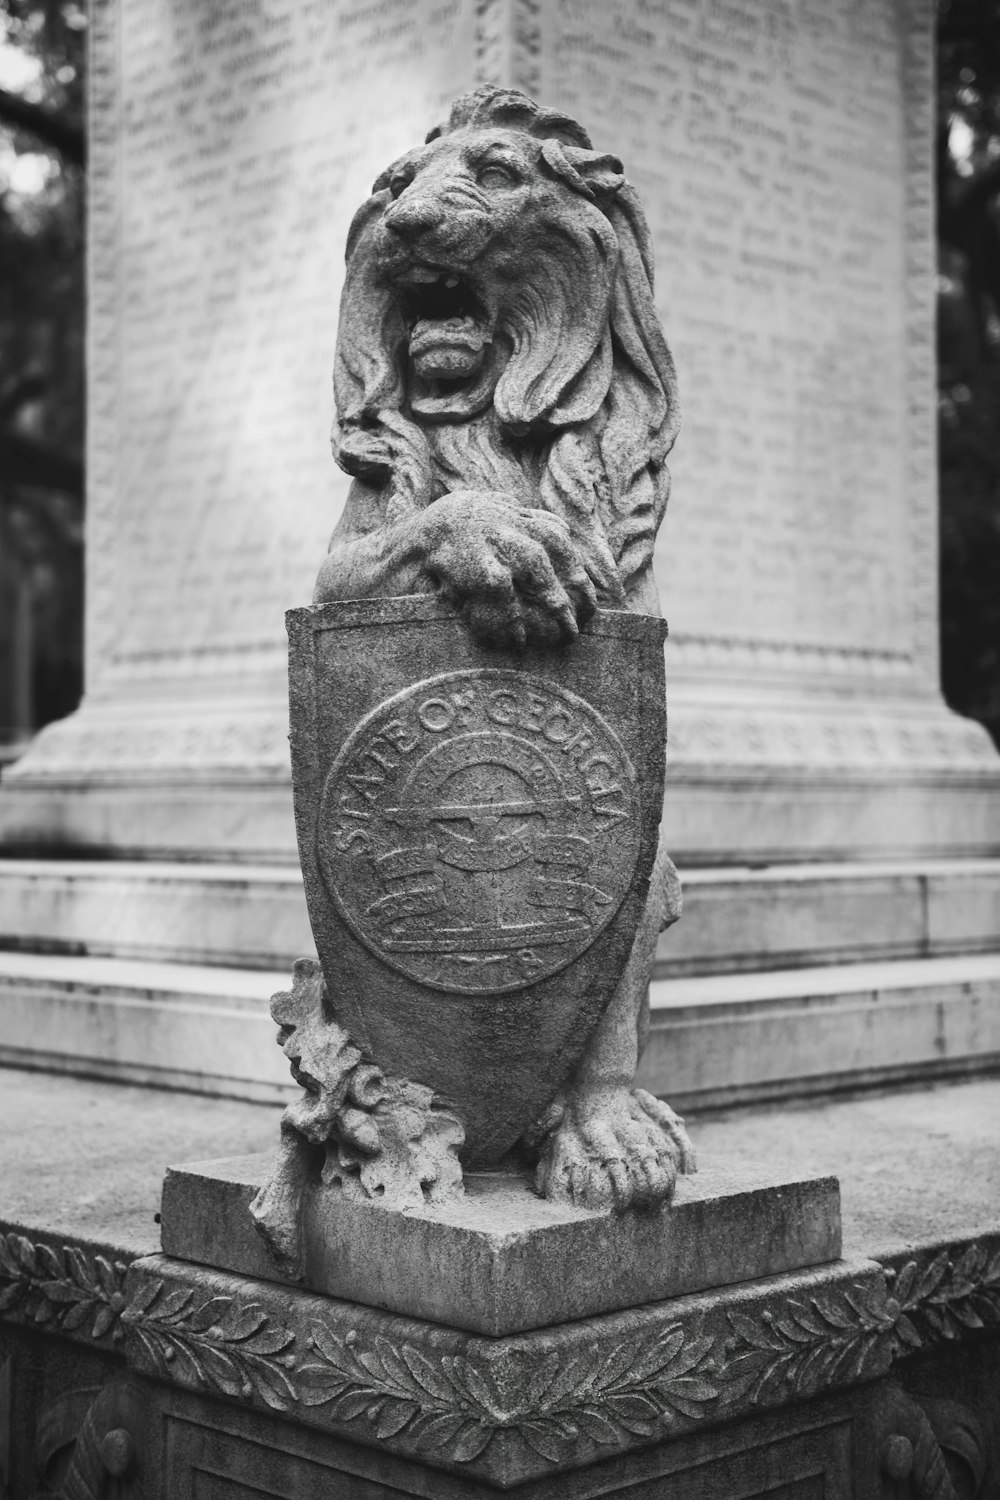 Eine Statue eines Löwen, der einen Schild hält